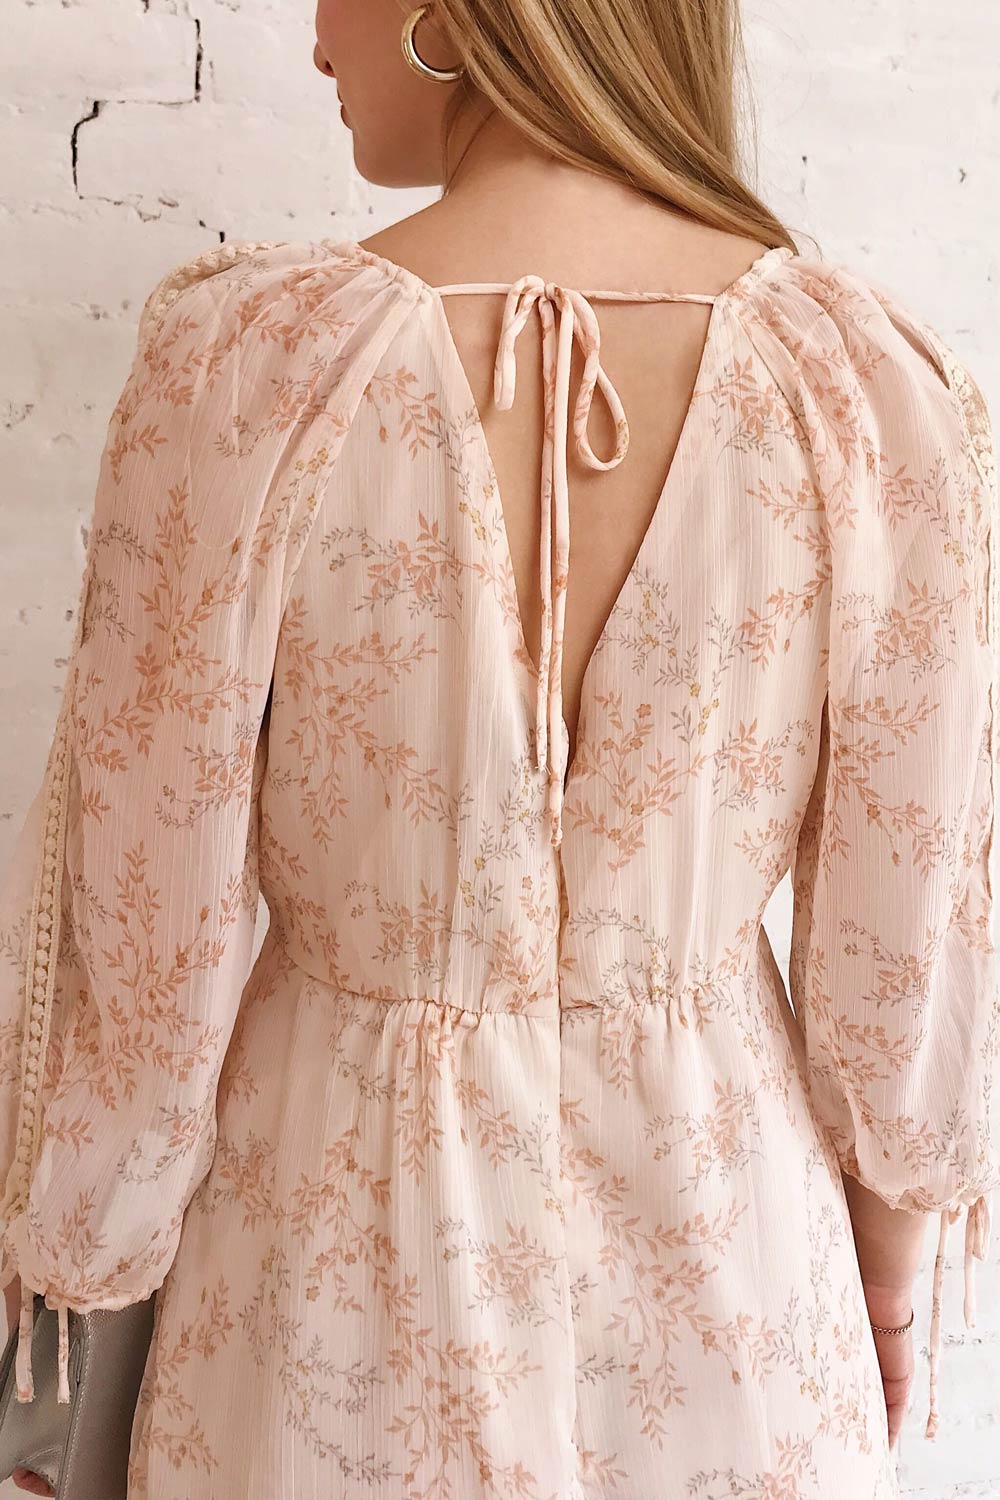 Mylene Light Pink Floral Short Dress w/ Frills | Boutique 1861 model back